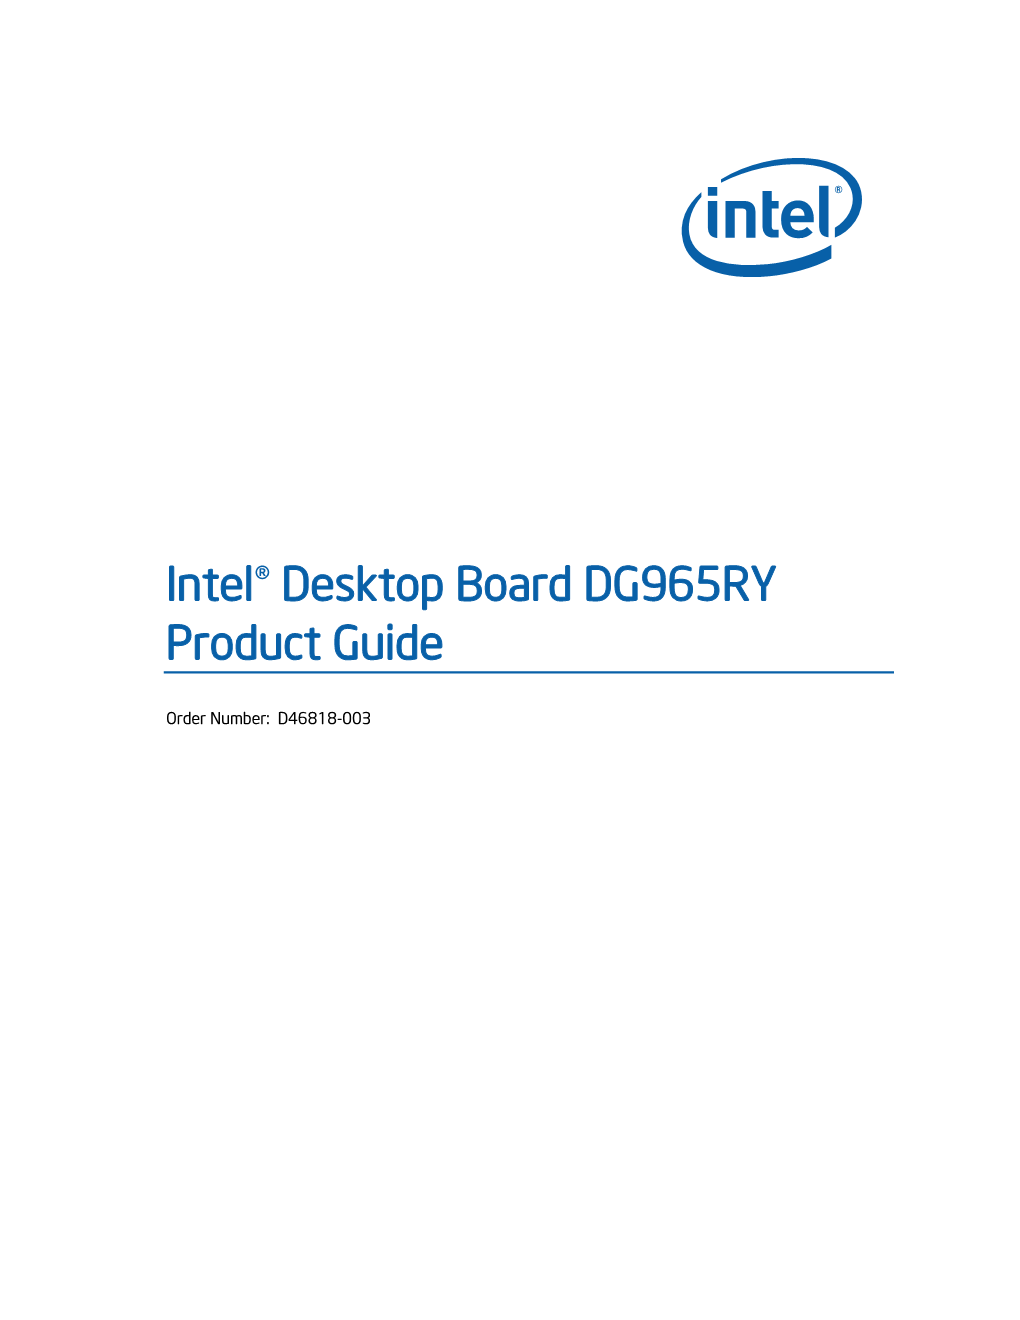 Intel® Desktop Board DG965RY Product Guide